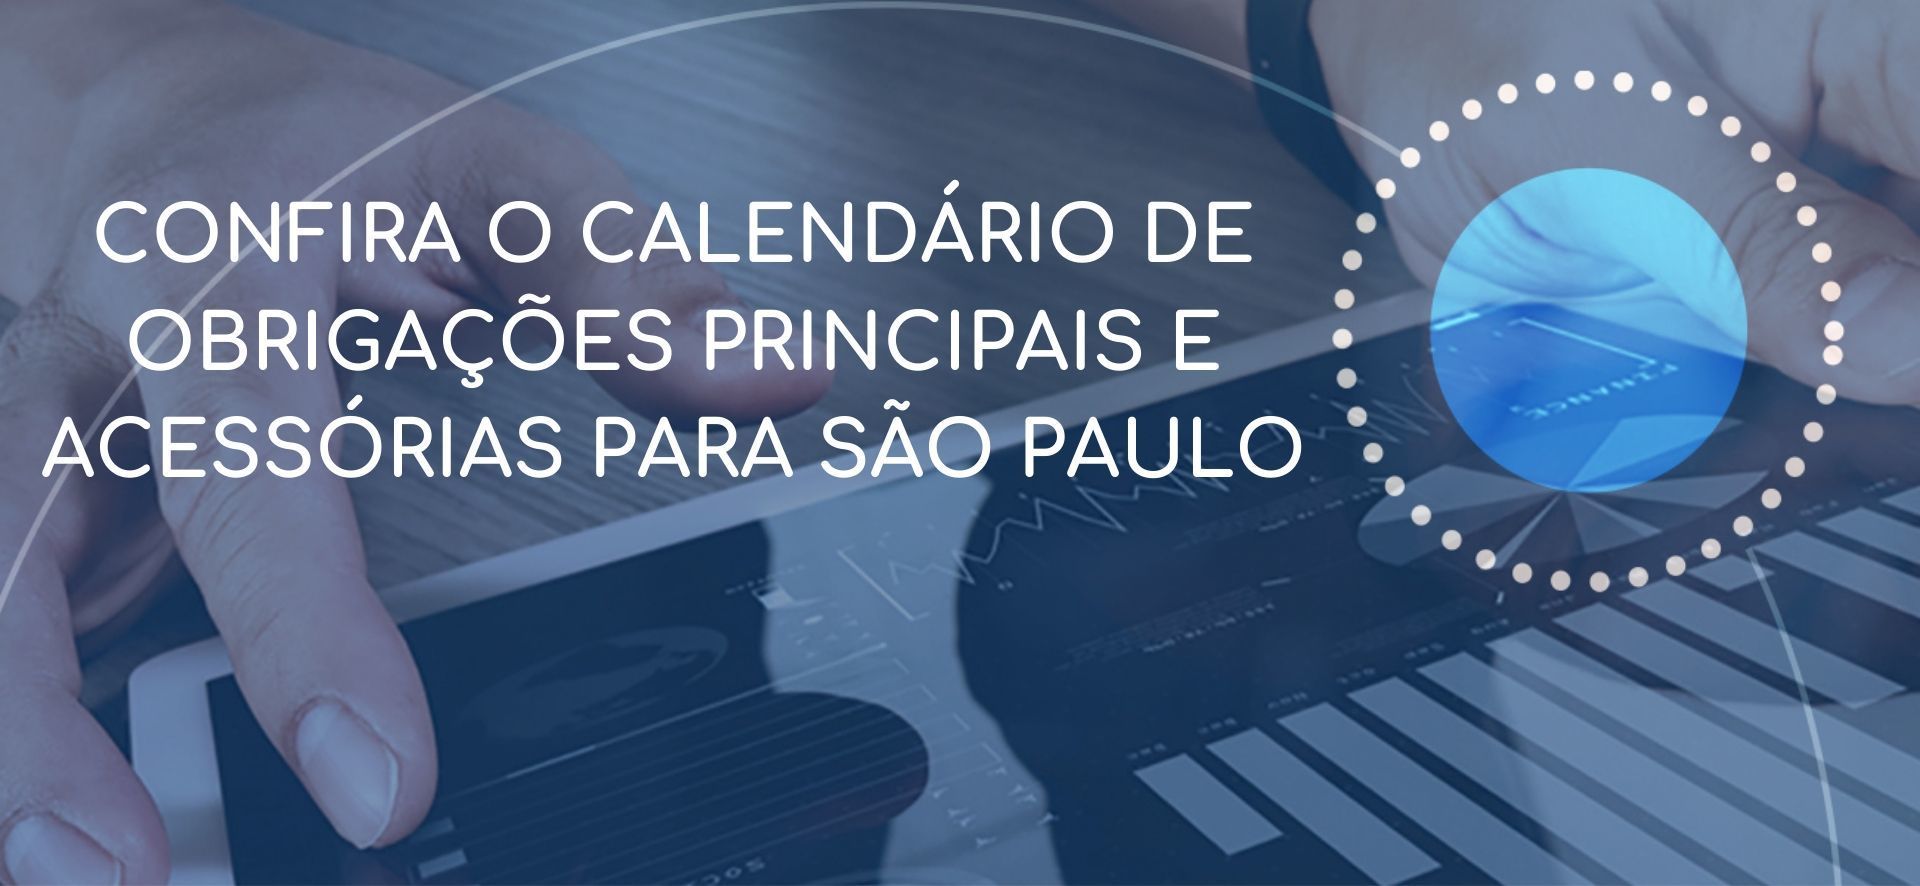 Confira o calendário de Obrigações Principais e Acessórias para São Paulo